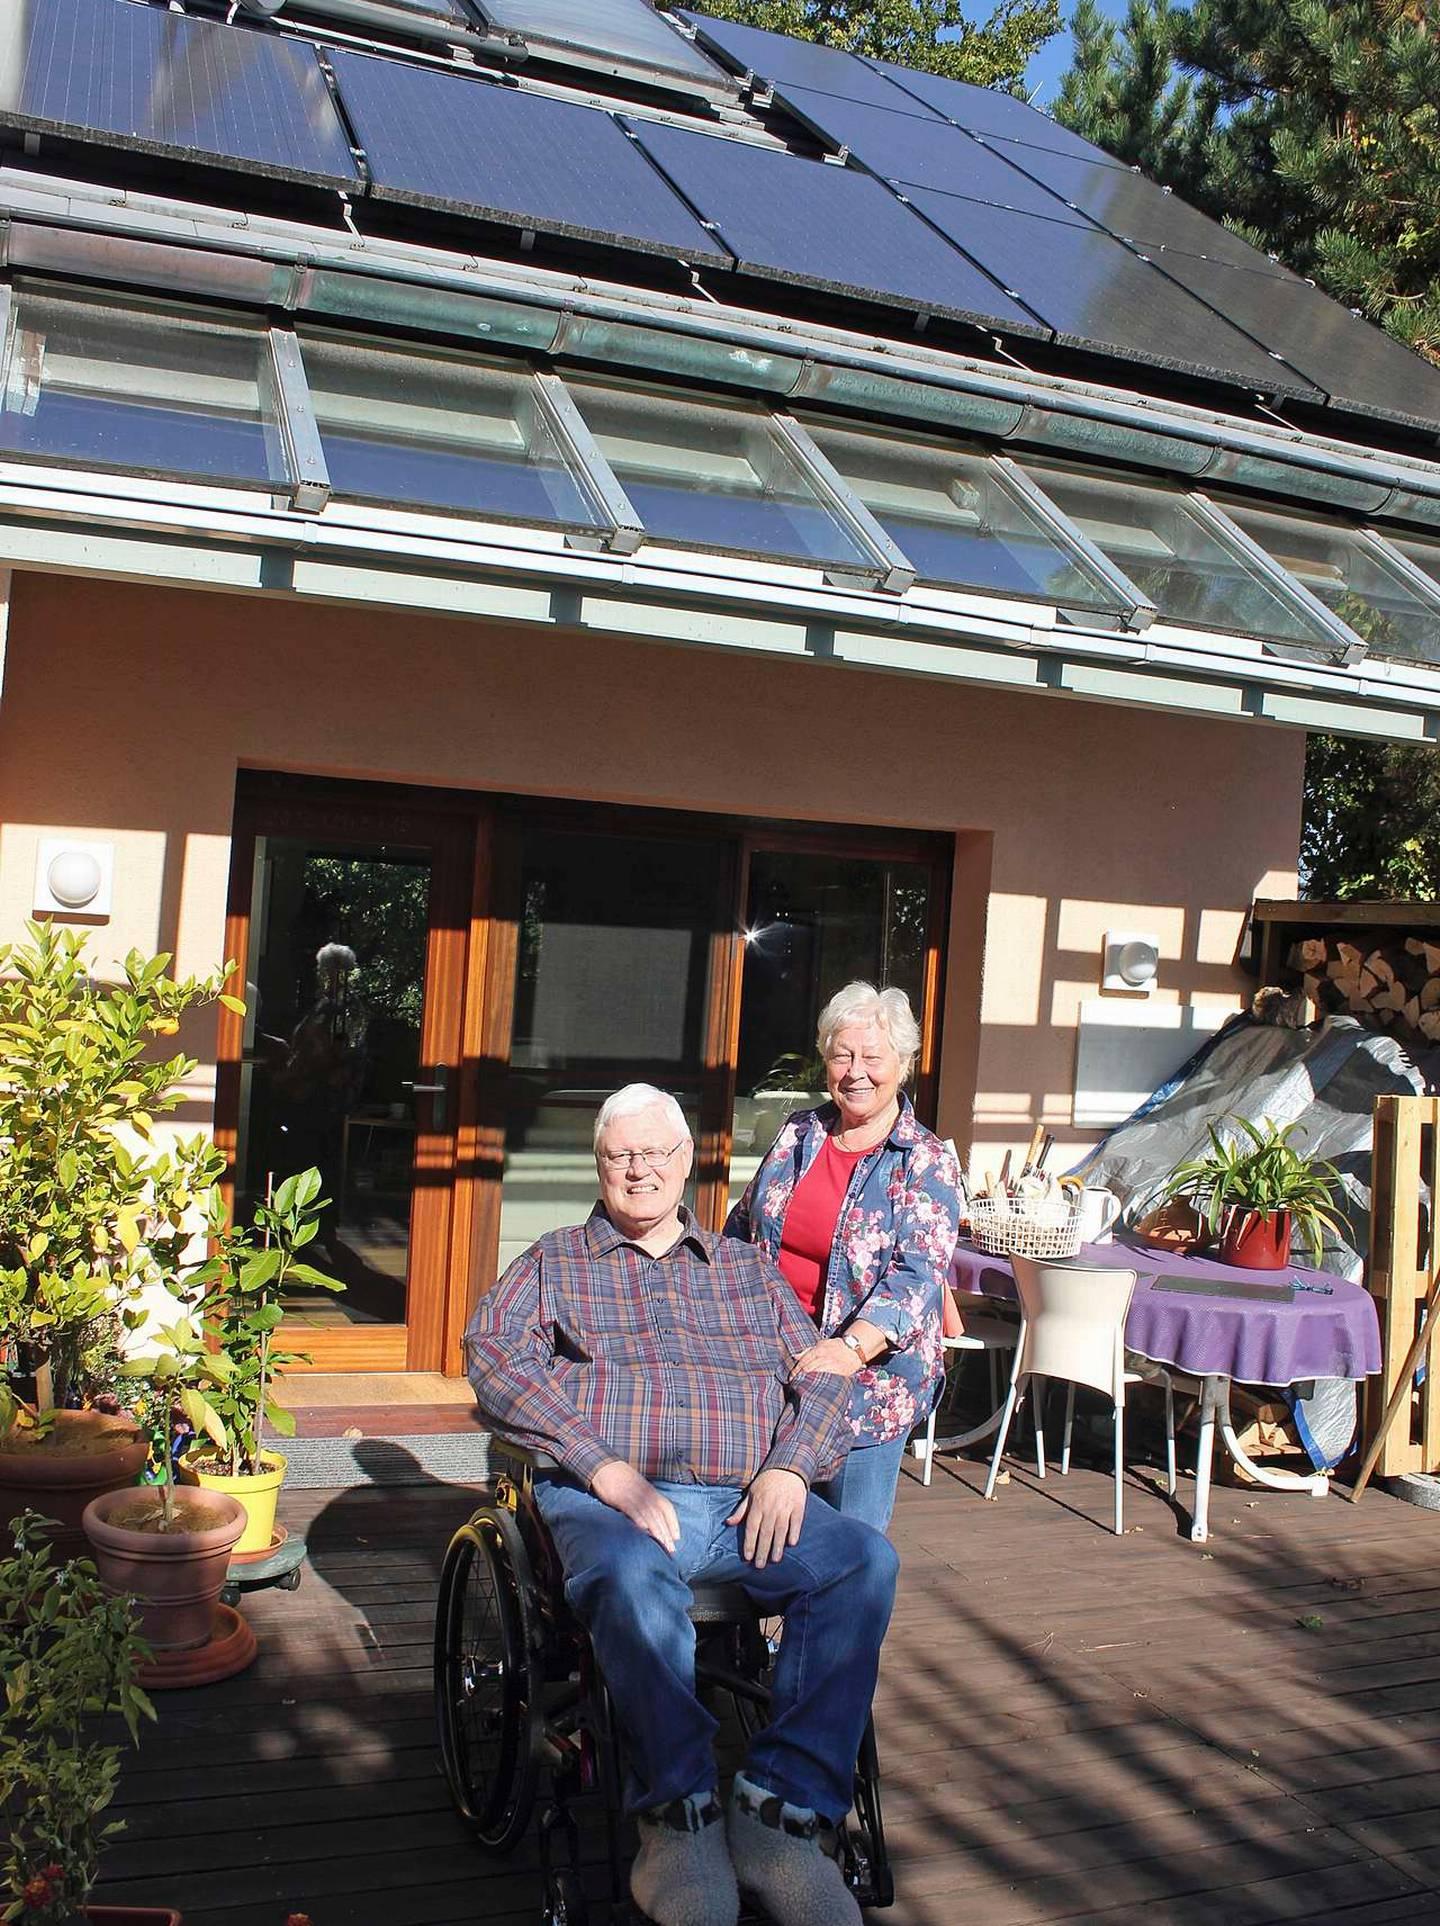 Noel (74) og Krista Stanton (71) har hatt solceller på taket i 20 år. De to øverste ved pipa har de brukt til å varme opp varmtvannet siden midten av 90-tallet. Og i fjor høst fikk ekteparet som har vært gift i 49 år de andre solcellene på taket.